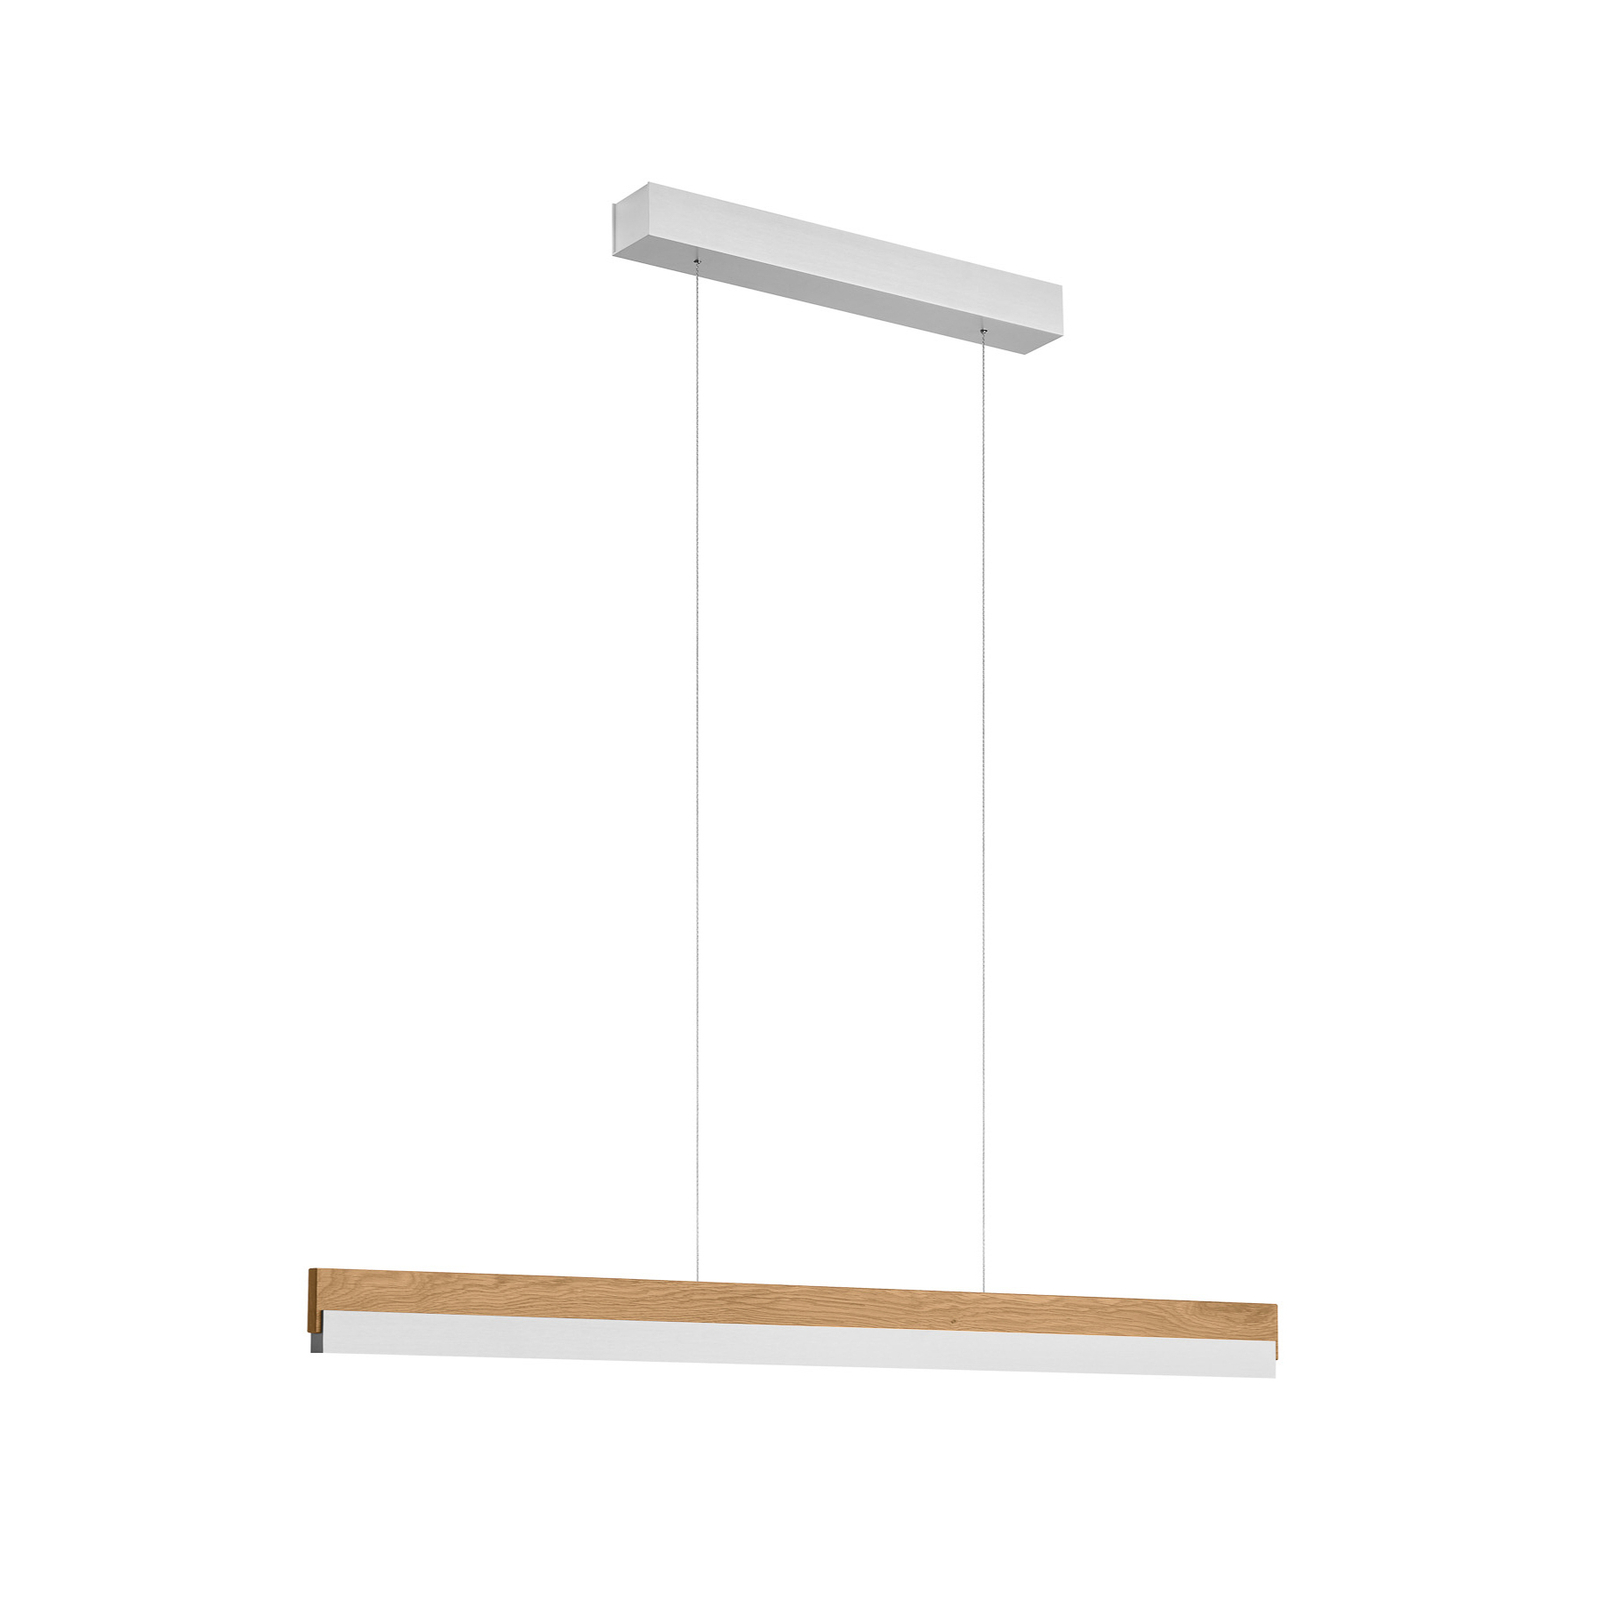 Quitani hanglamp Keijo, nikkel/eiken, 103 cm